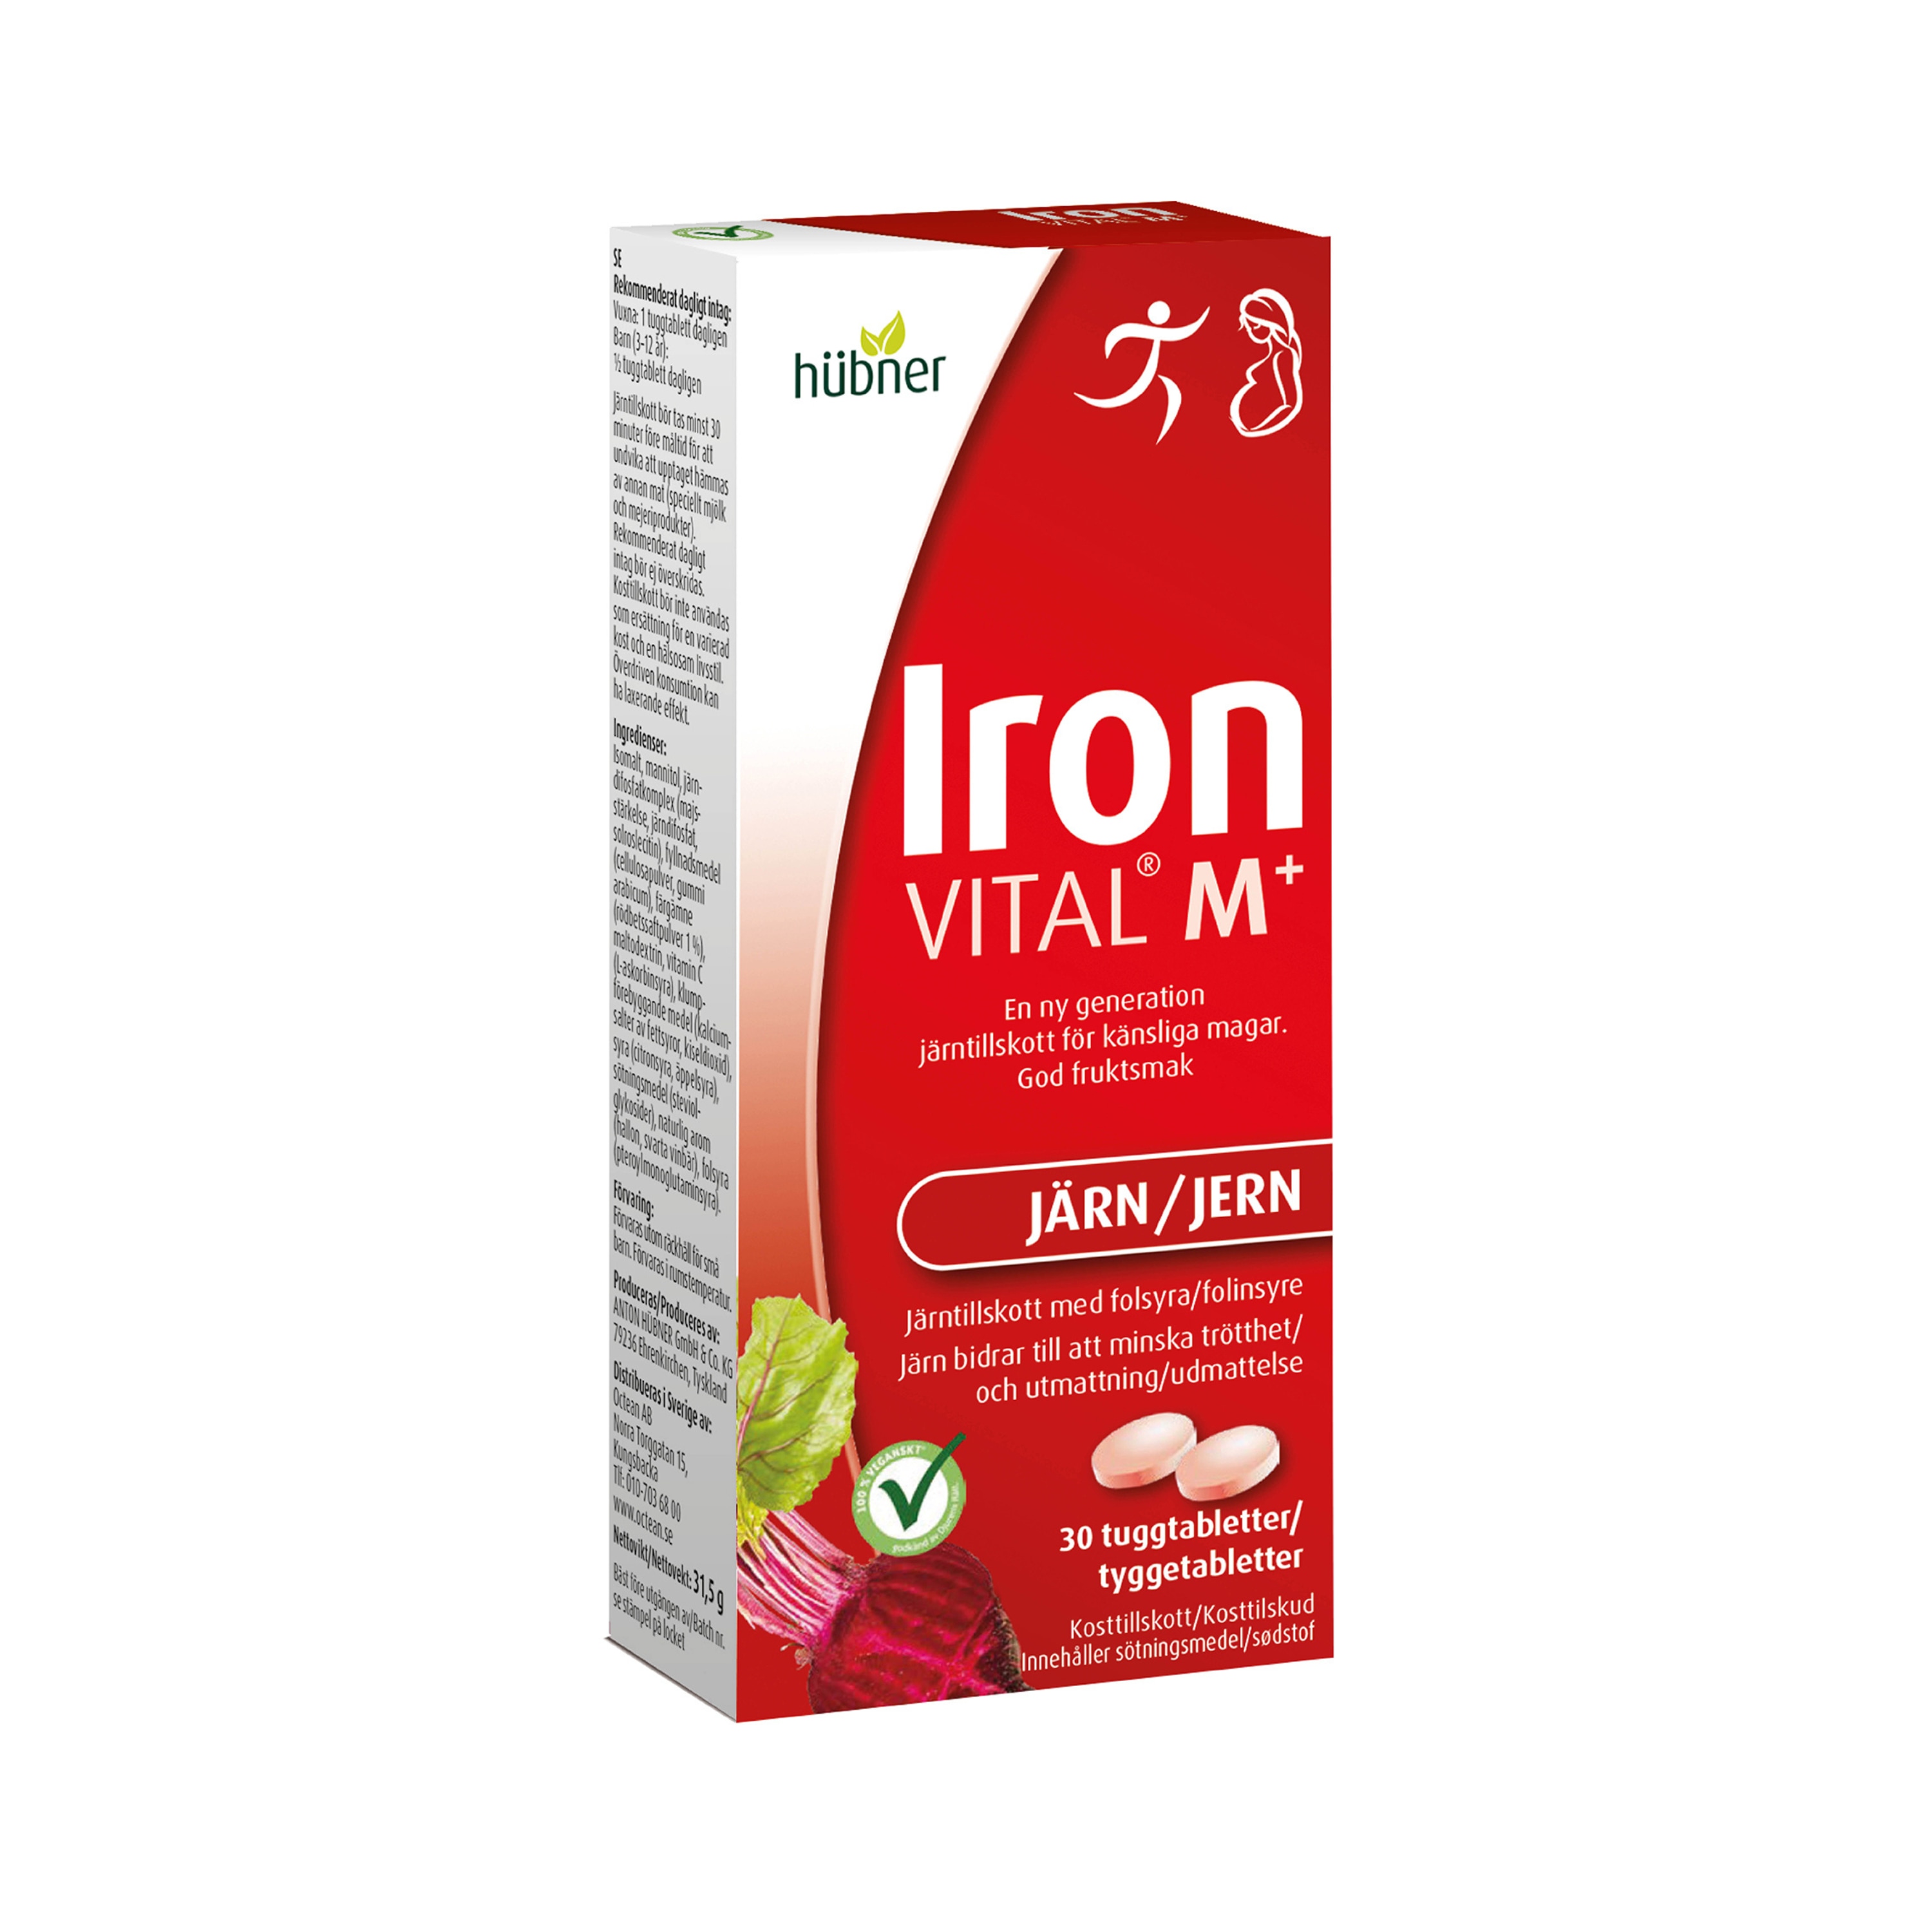 Iron Vital M+ 30t